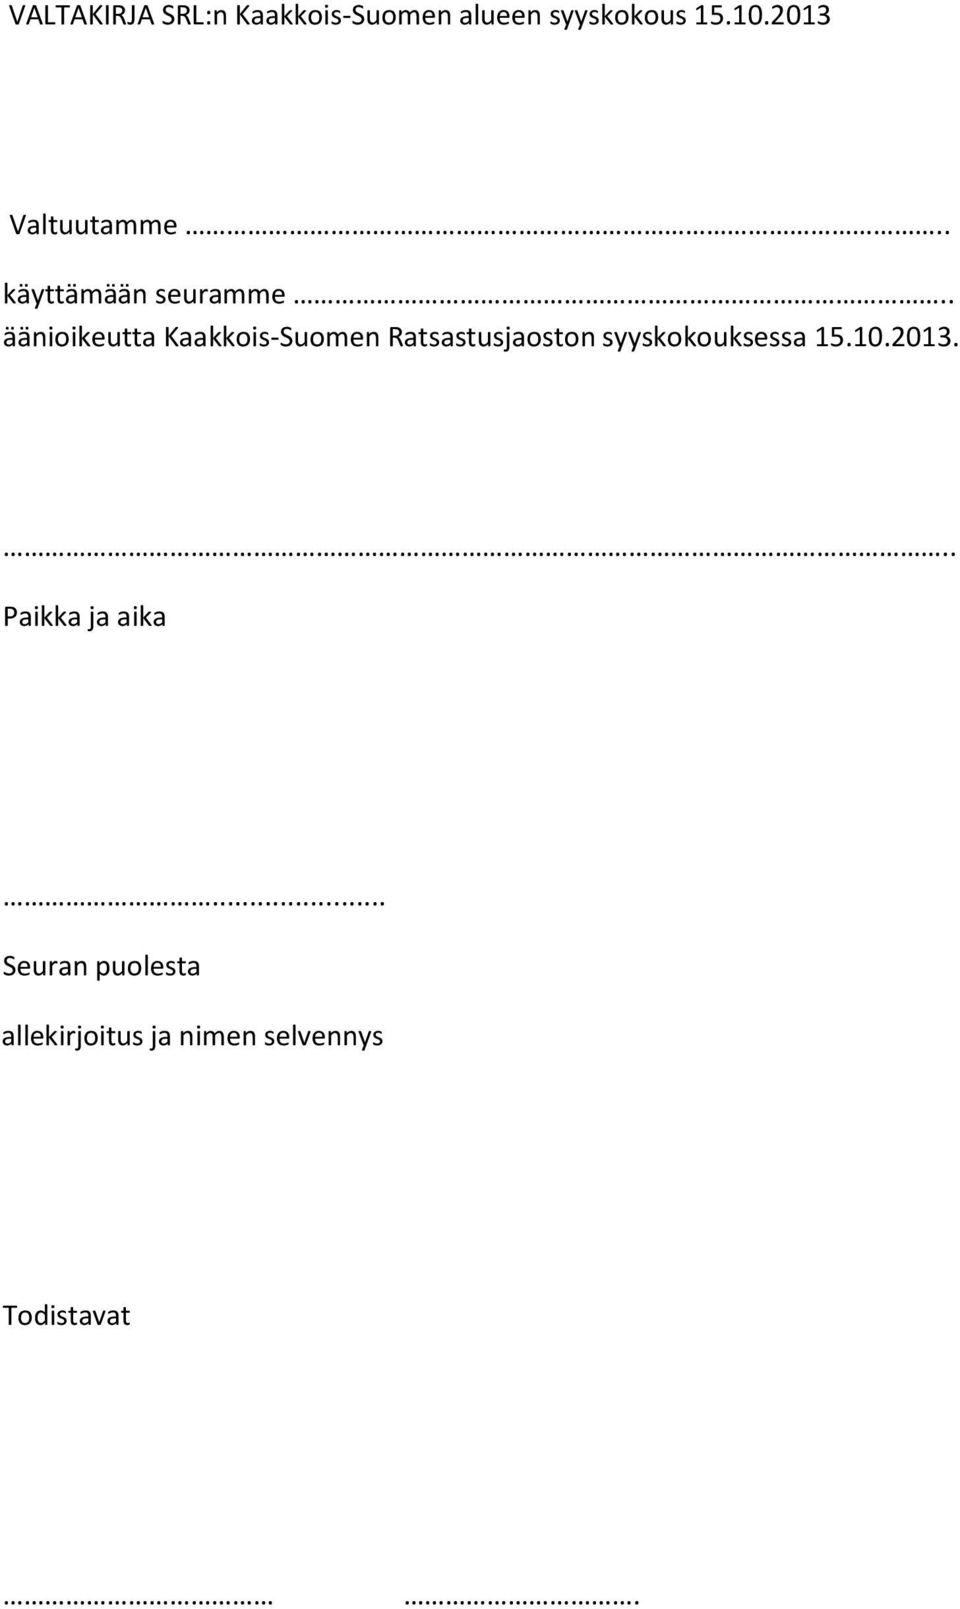 . äänioikeutta Kaakkois-Suomen Ratsastusjaoston